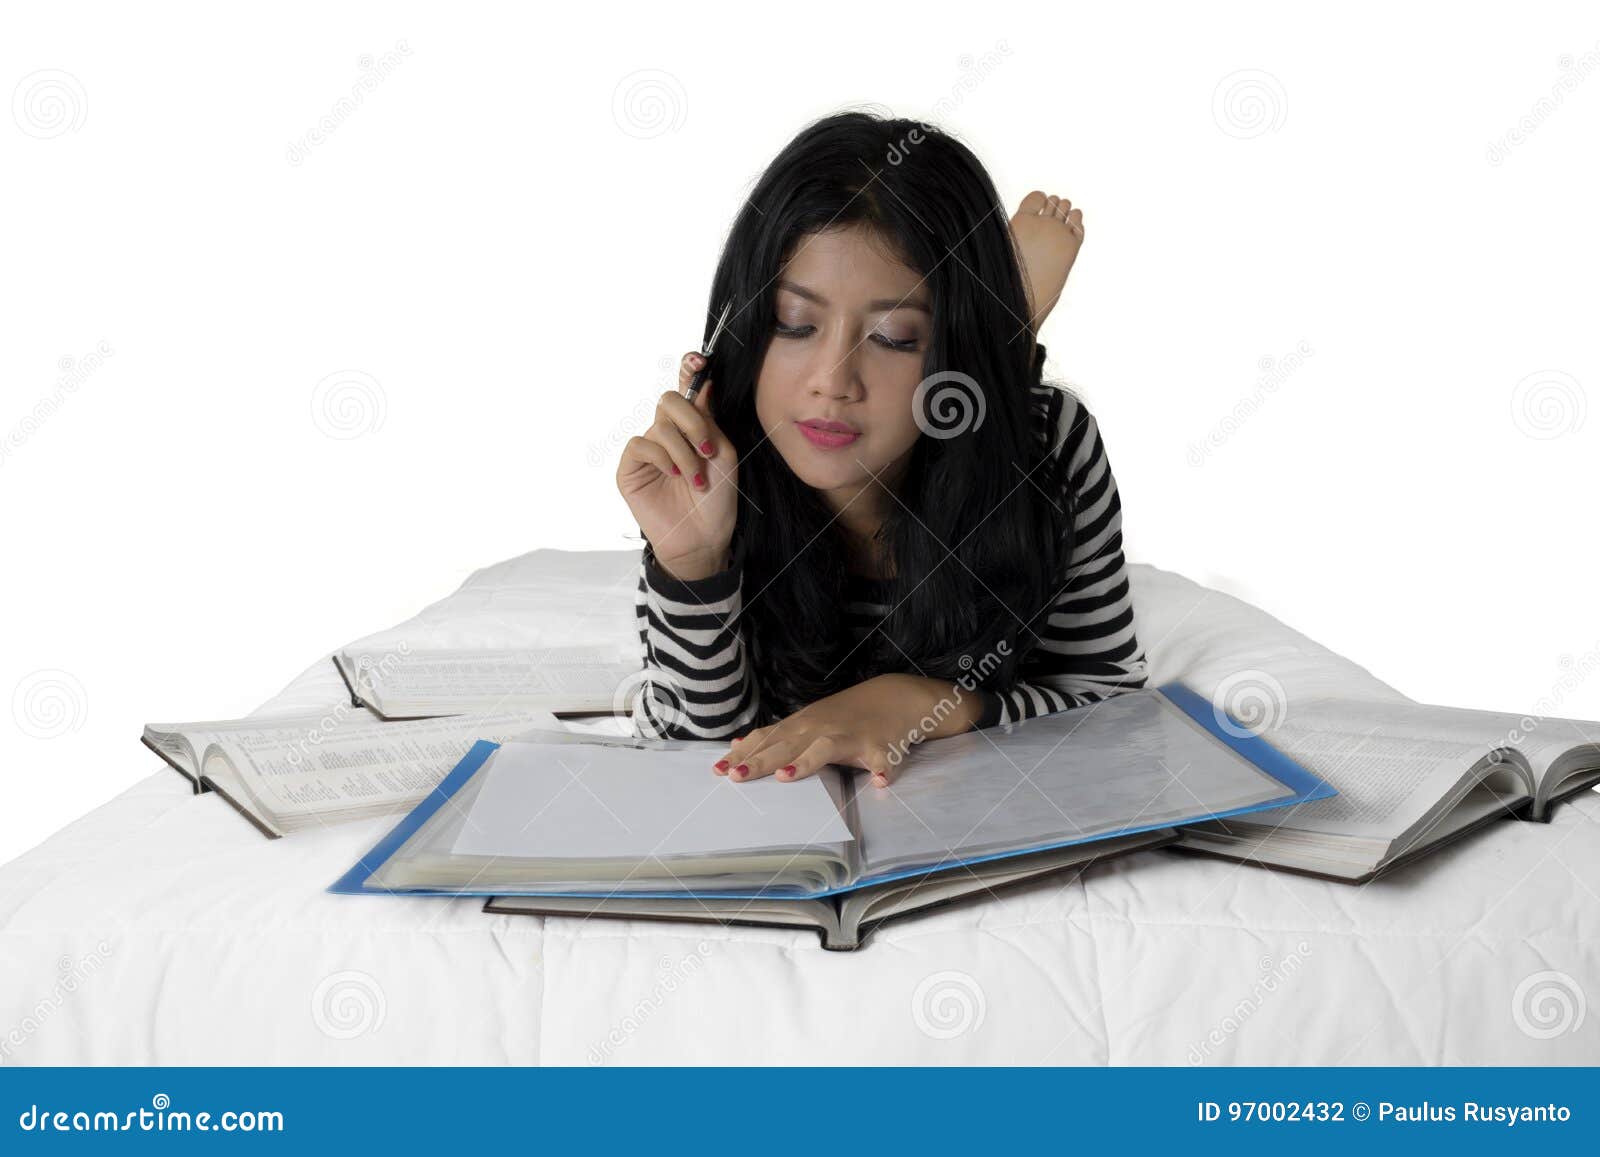 Студентка на белоснежной кровати